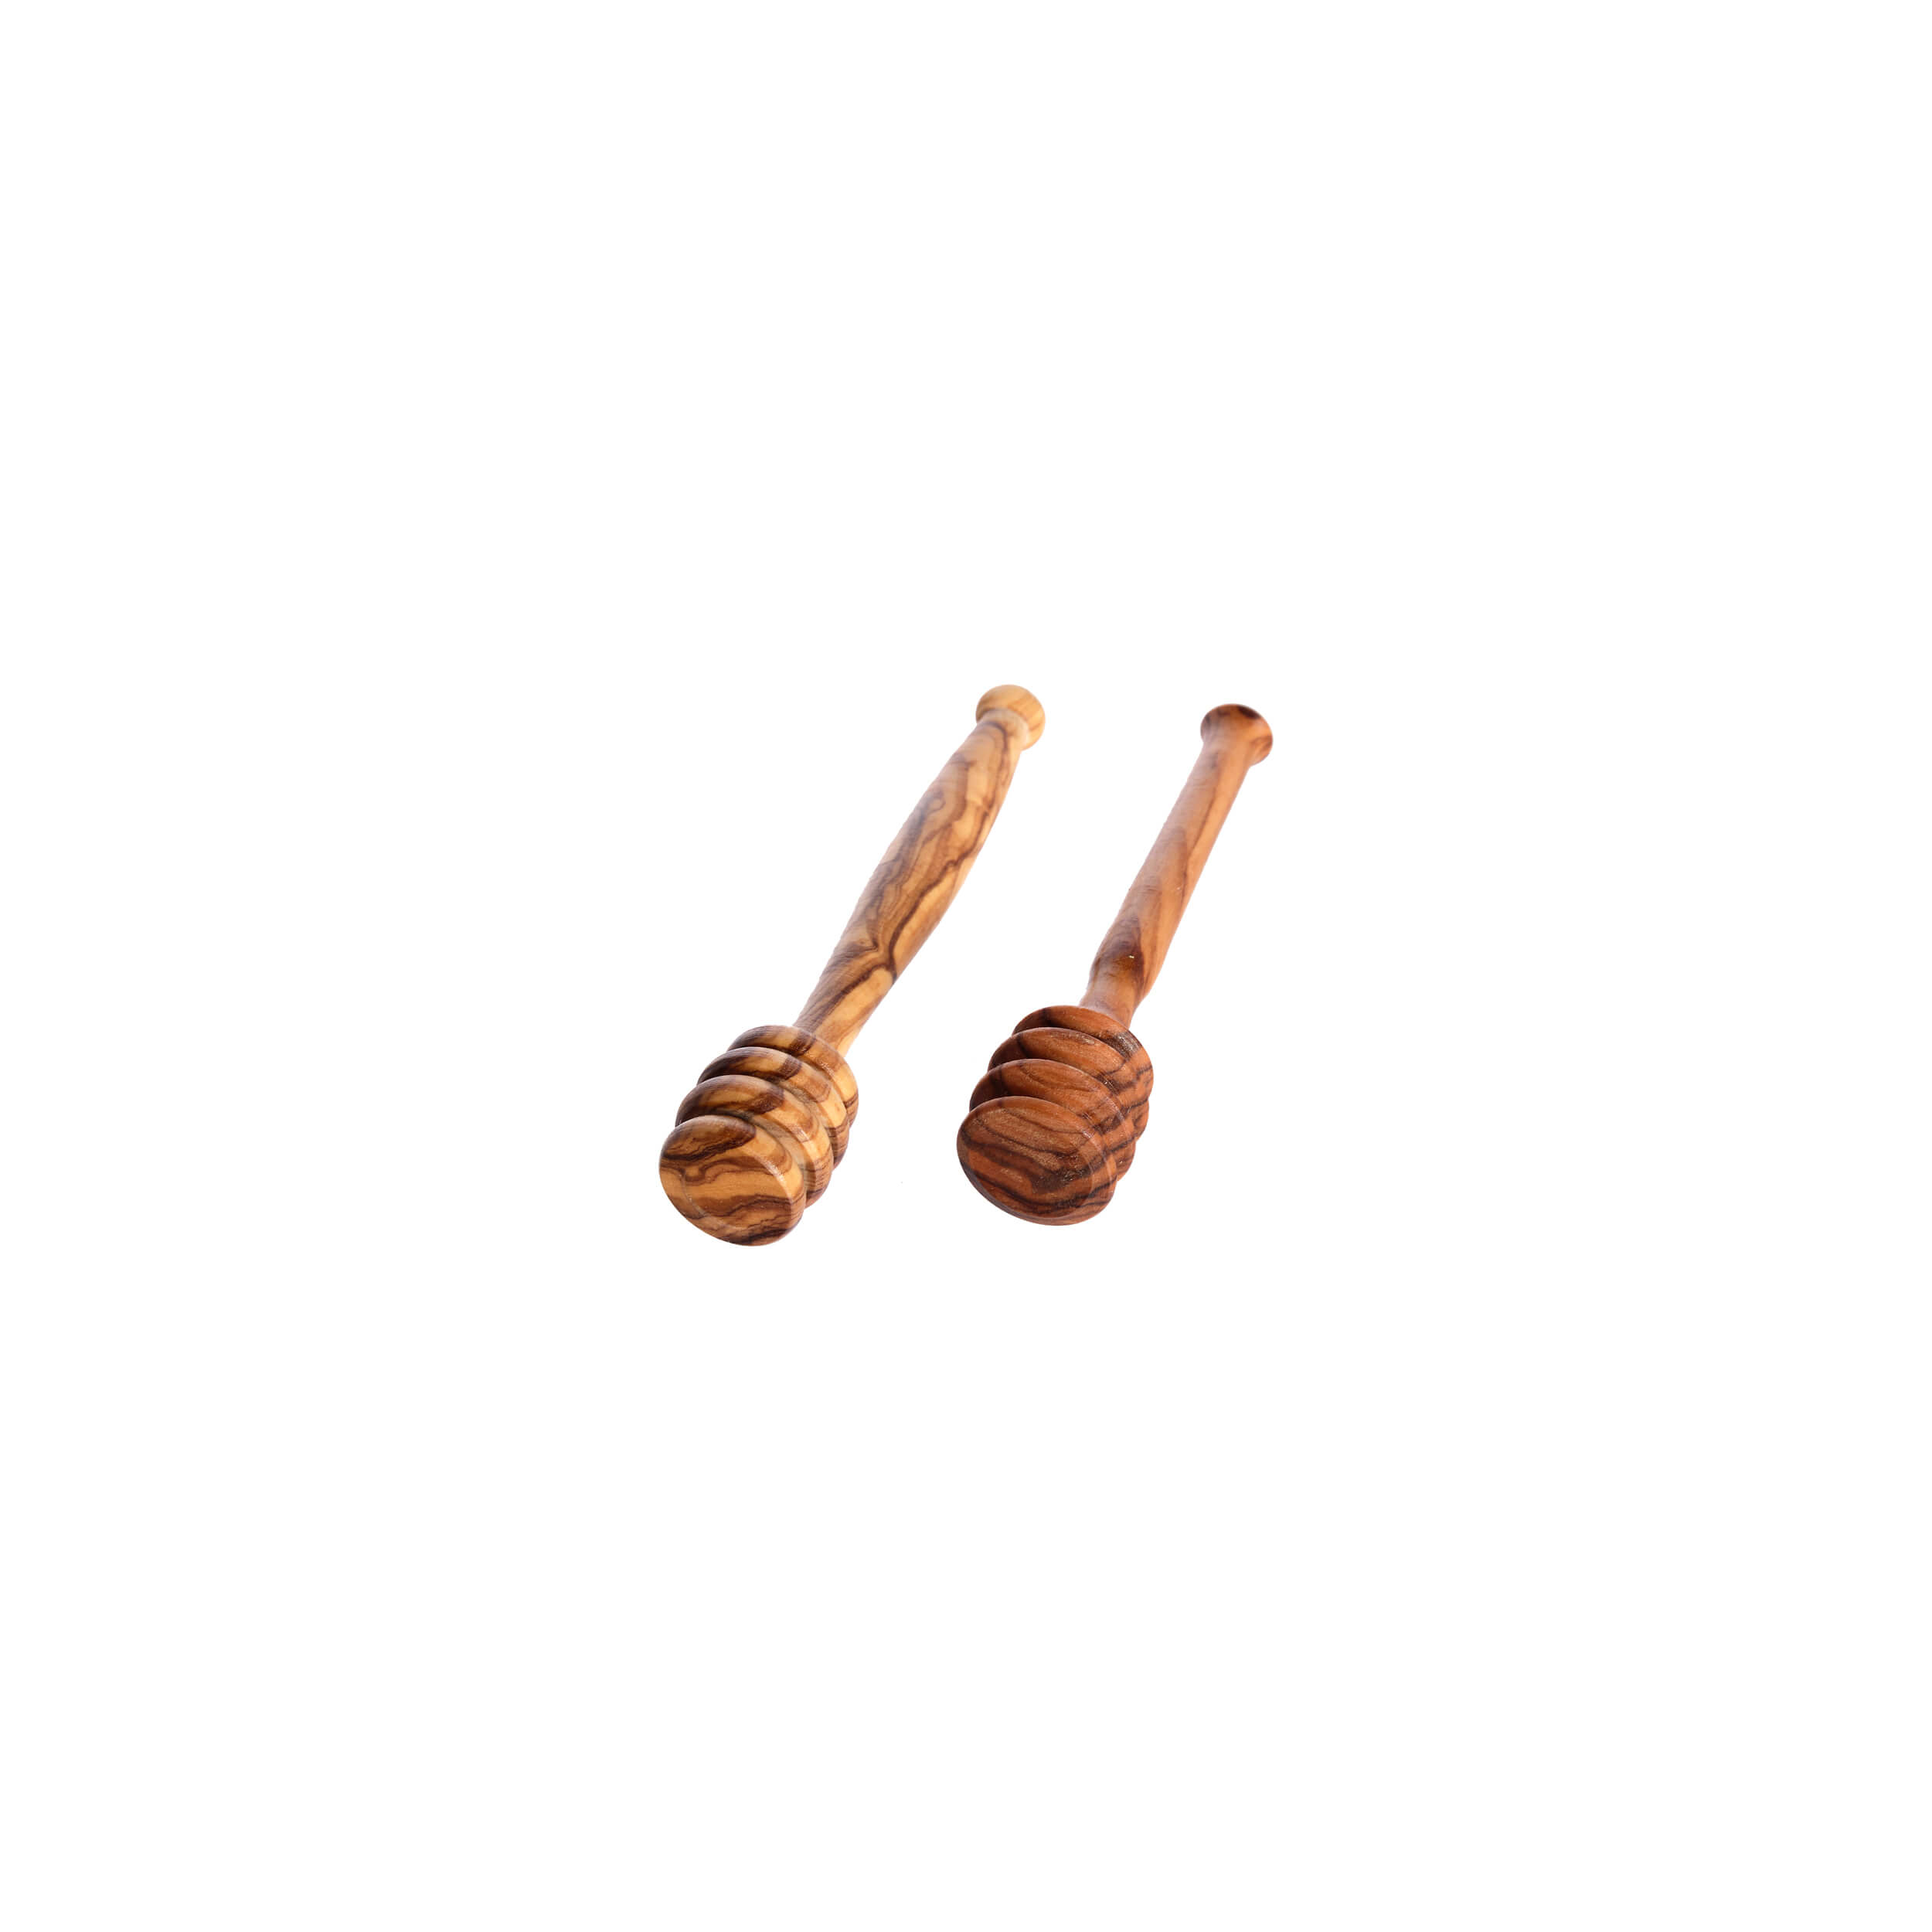 Μελόξυλο Μικρό 'Mavridis Wooden Products' 9gr